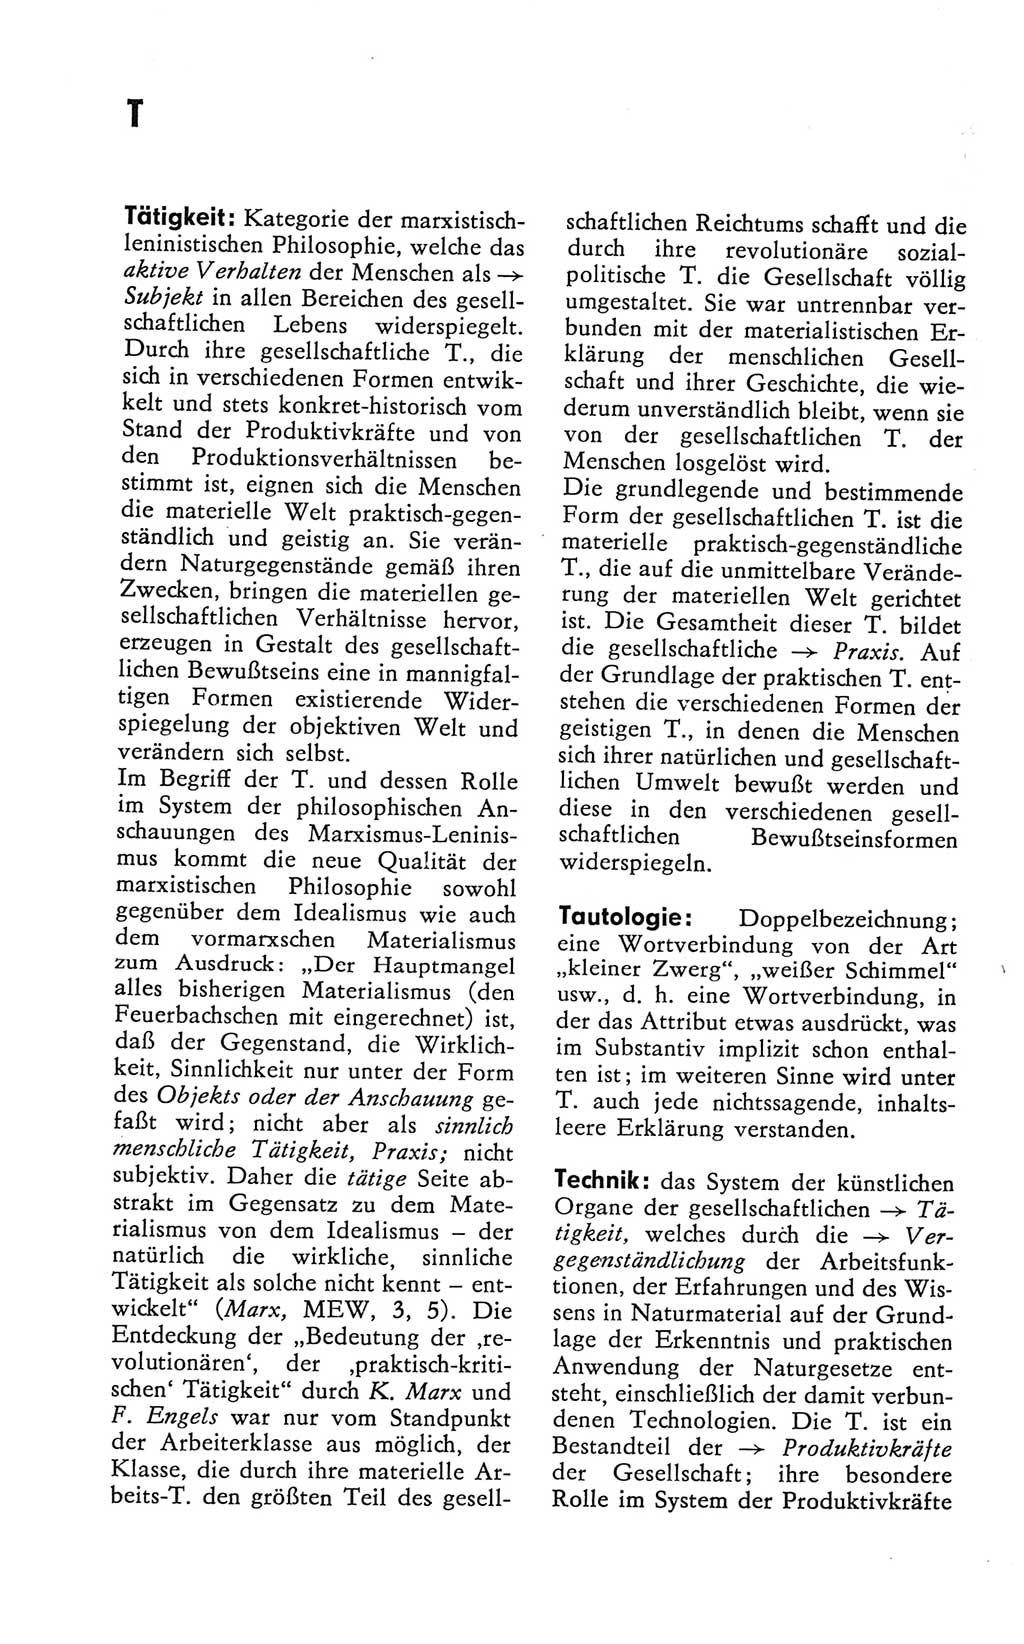 Kleines Wörterbuch der marxistisch-leninistischen Philosophie [Deutsche Demokratische Republik (DDR)] 1981, Seite 314 (Kl. Wb. ML Phil. DDR 1981, S. 314)